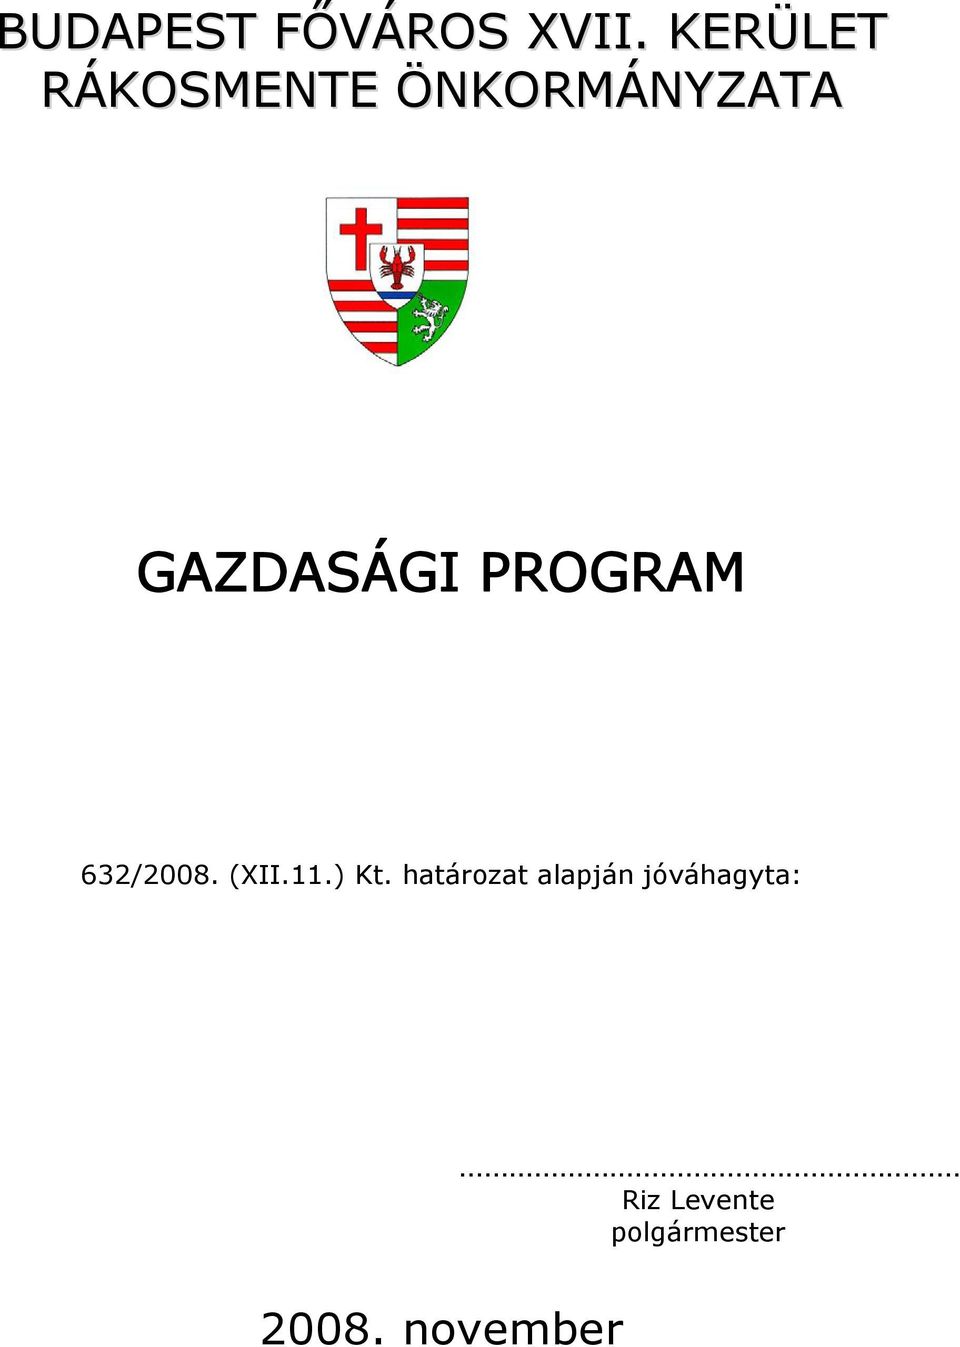 GAZDASÁGI PROGRAM 632/2008. (XII.11.) Kt.